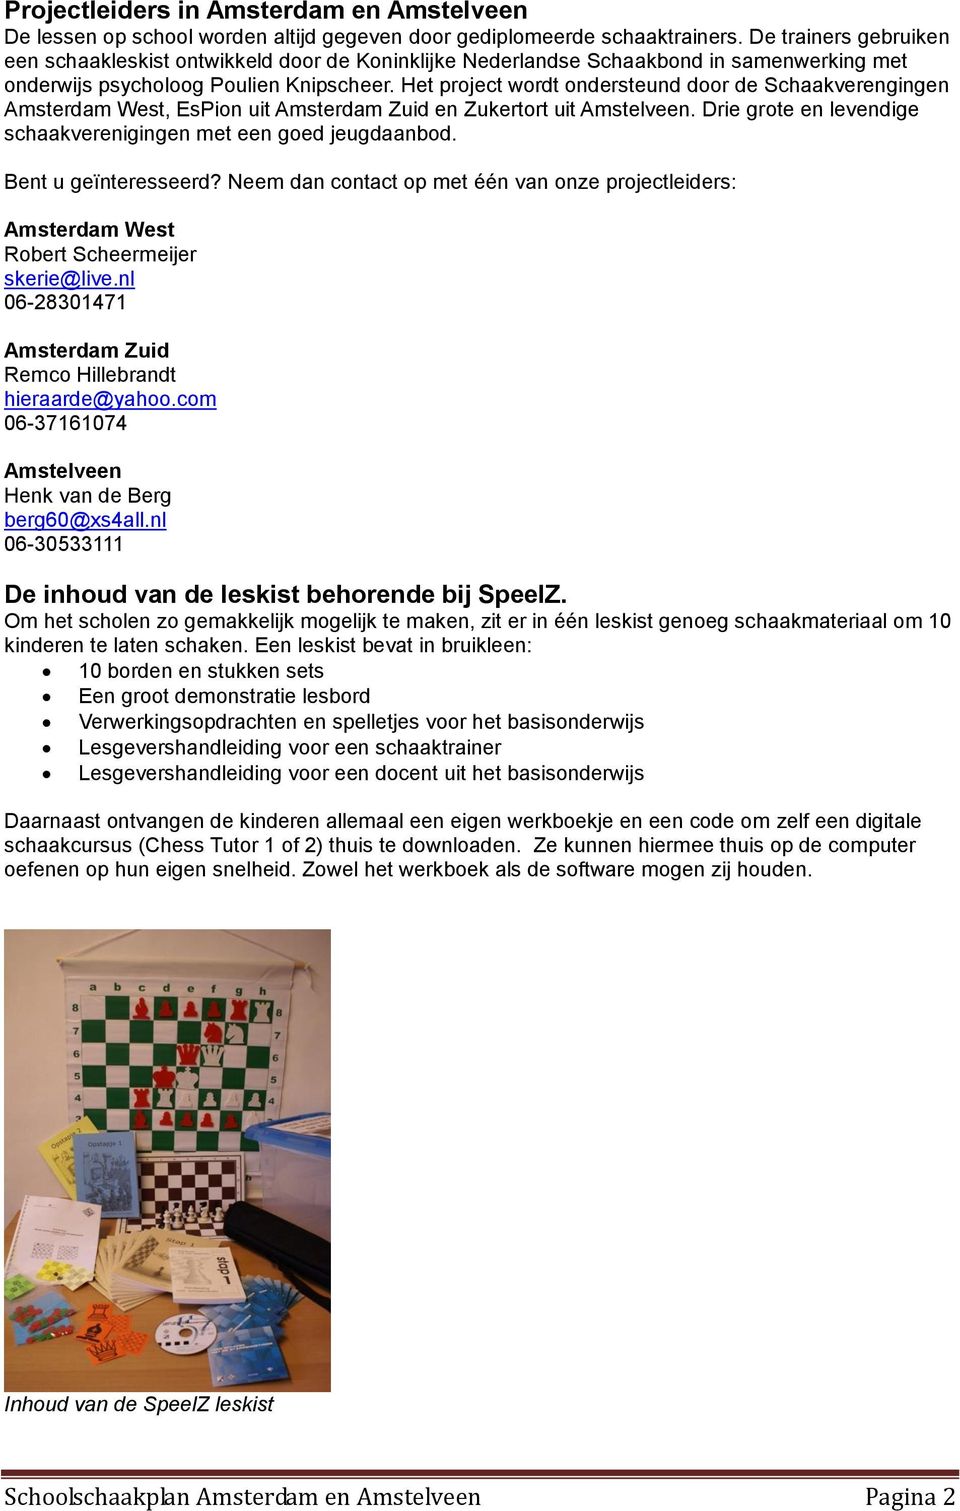 Het project wordt ondersteund door de Schaakverengingen Amsterdam West, EsPion uit Amsterdam Zuid en Zukertort uit Amstelveen. Drie grote en levendige schaakverenigingen met een goed jeugdaanbod.